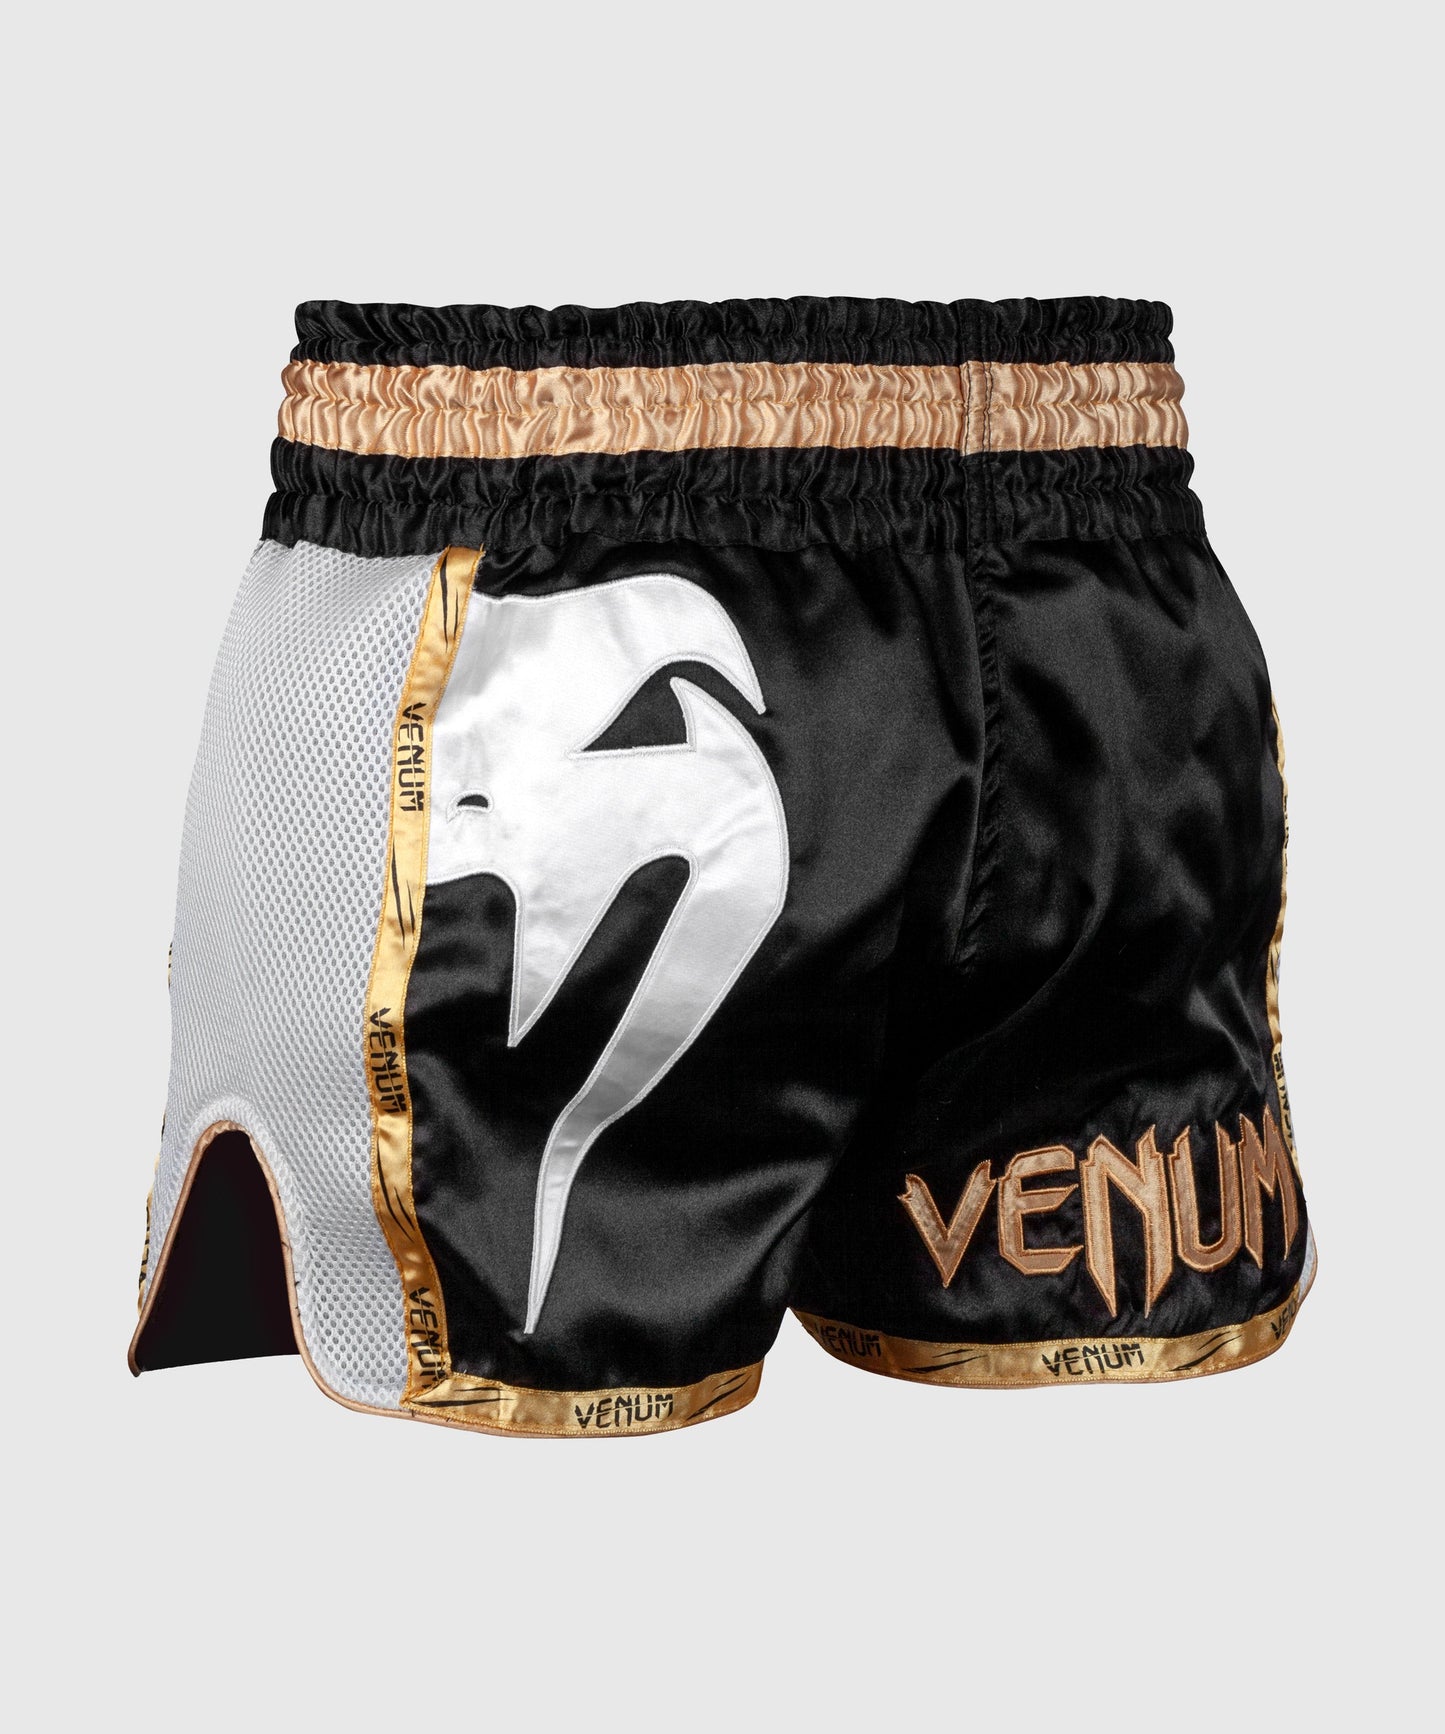 Venum Giant Muay Thai Shorts - Black/White/Gold